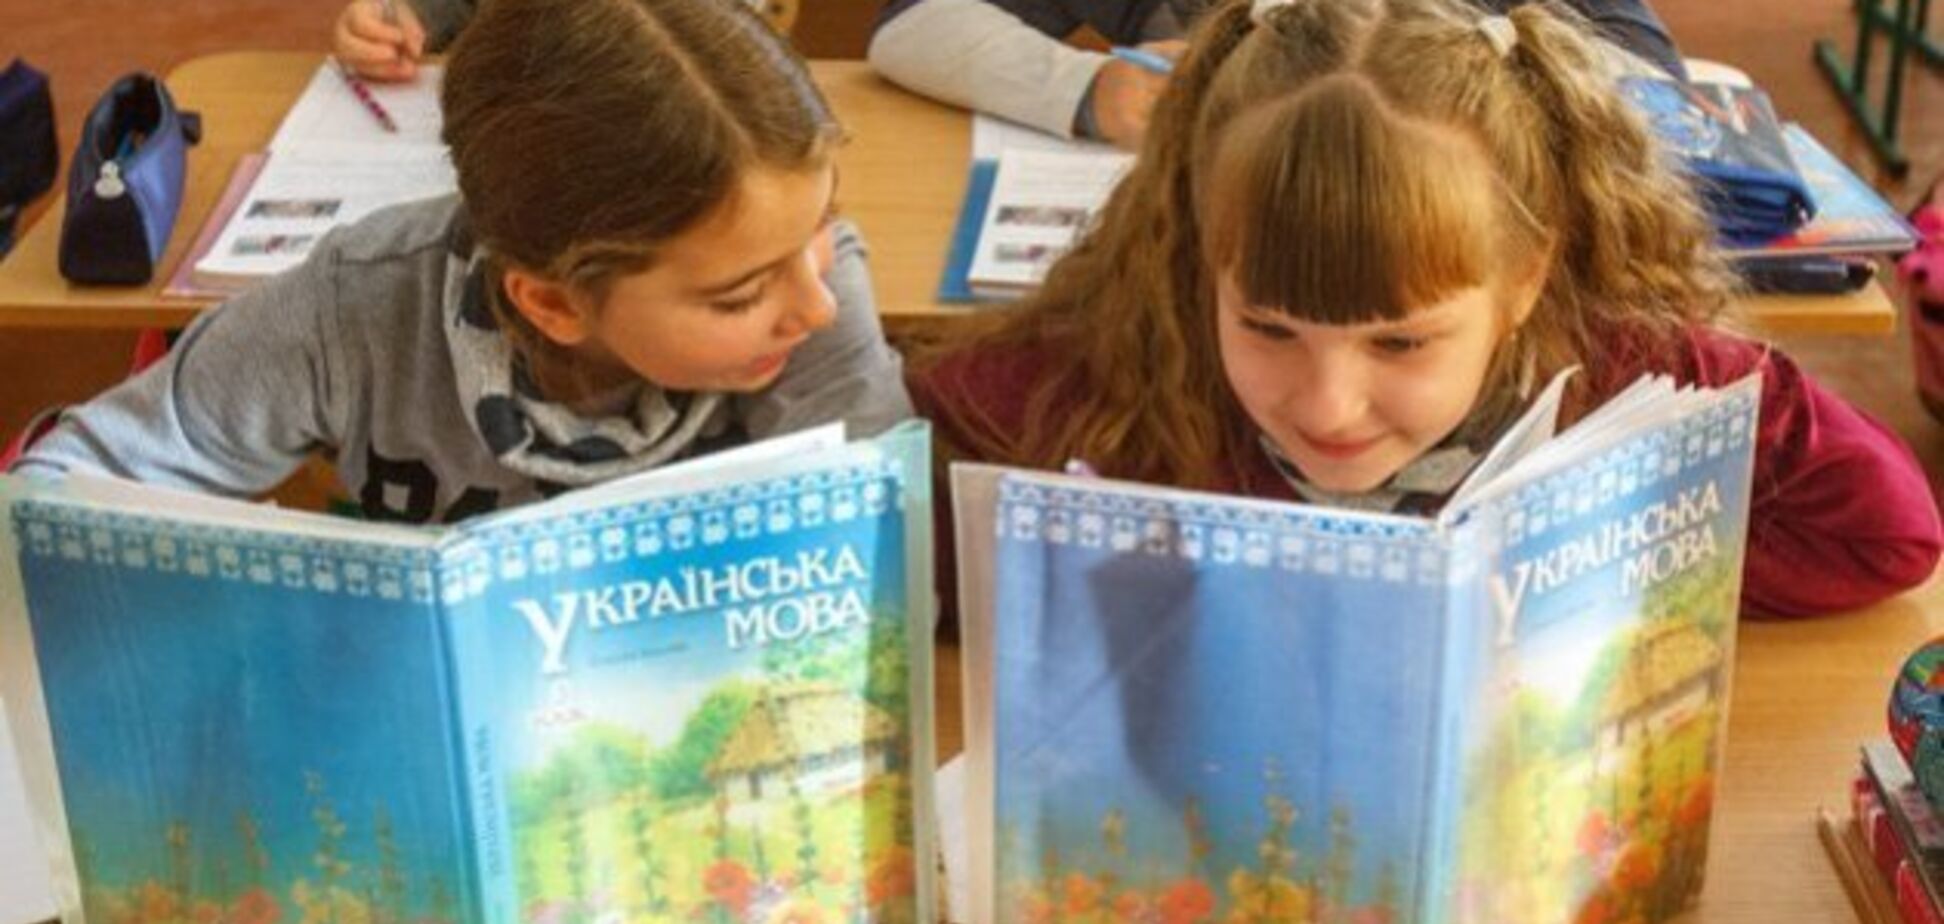 На очереди крымскотатарский: украинский язык из Крыма окончательно вытеснили